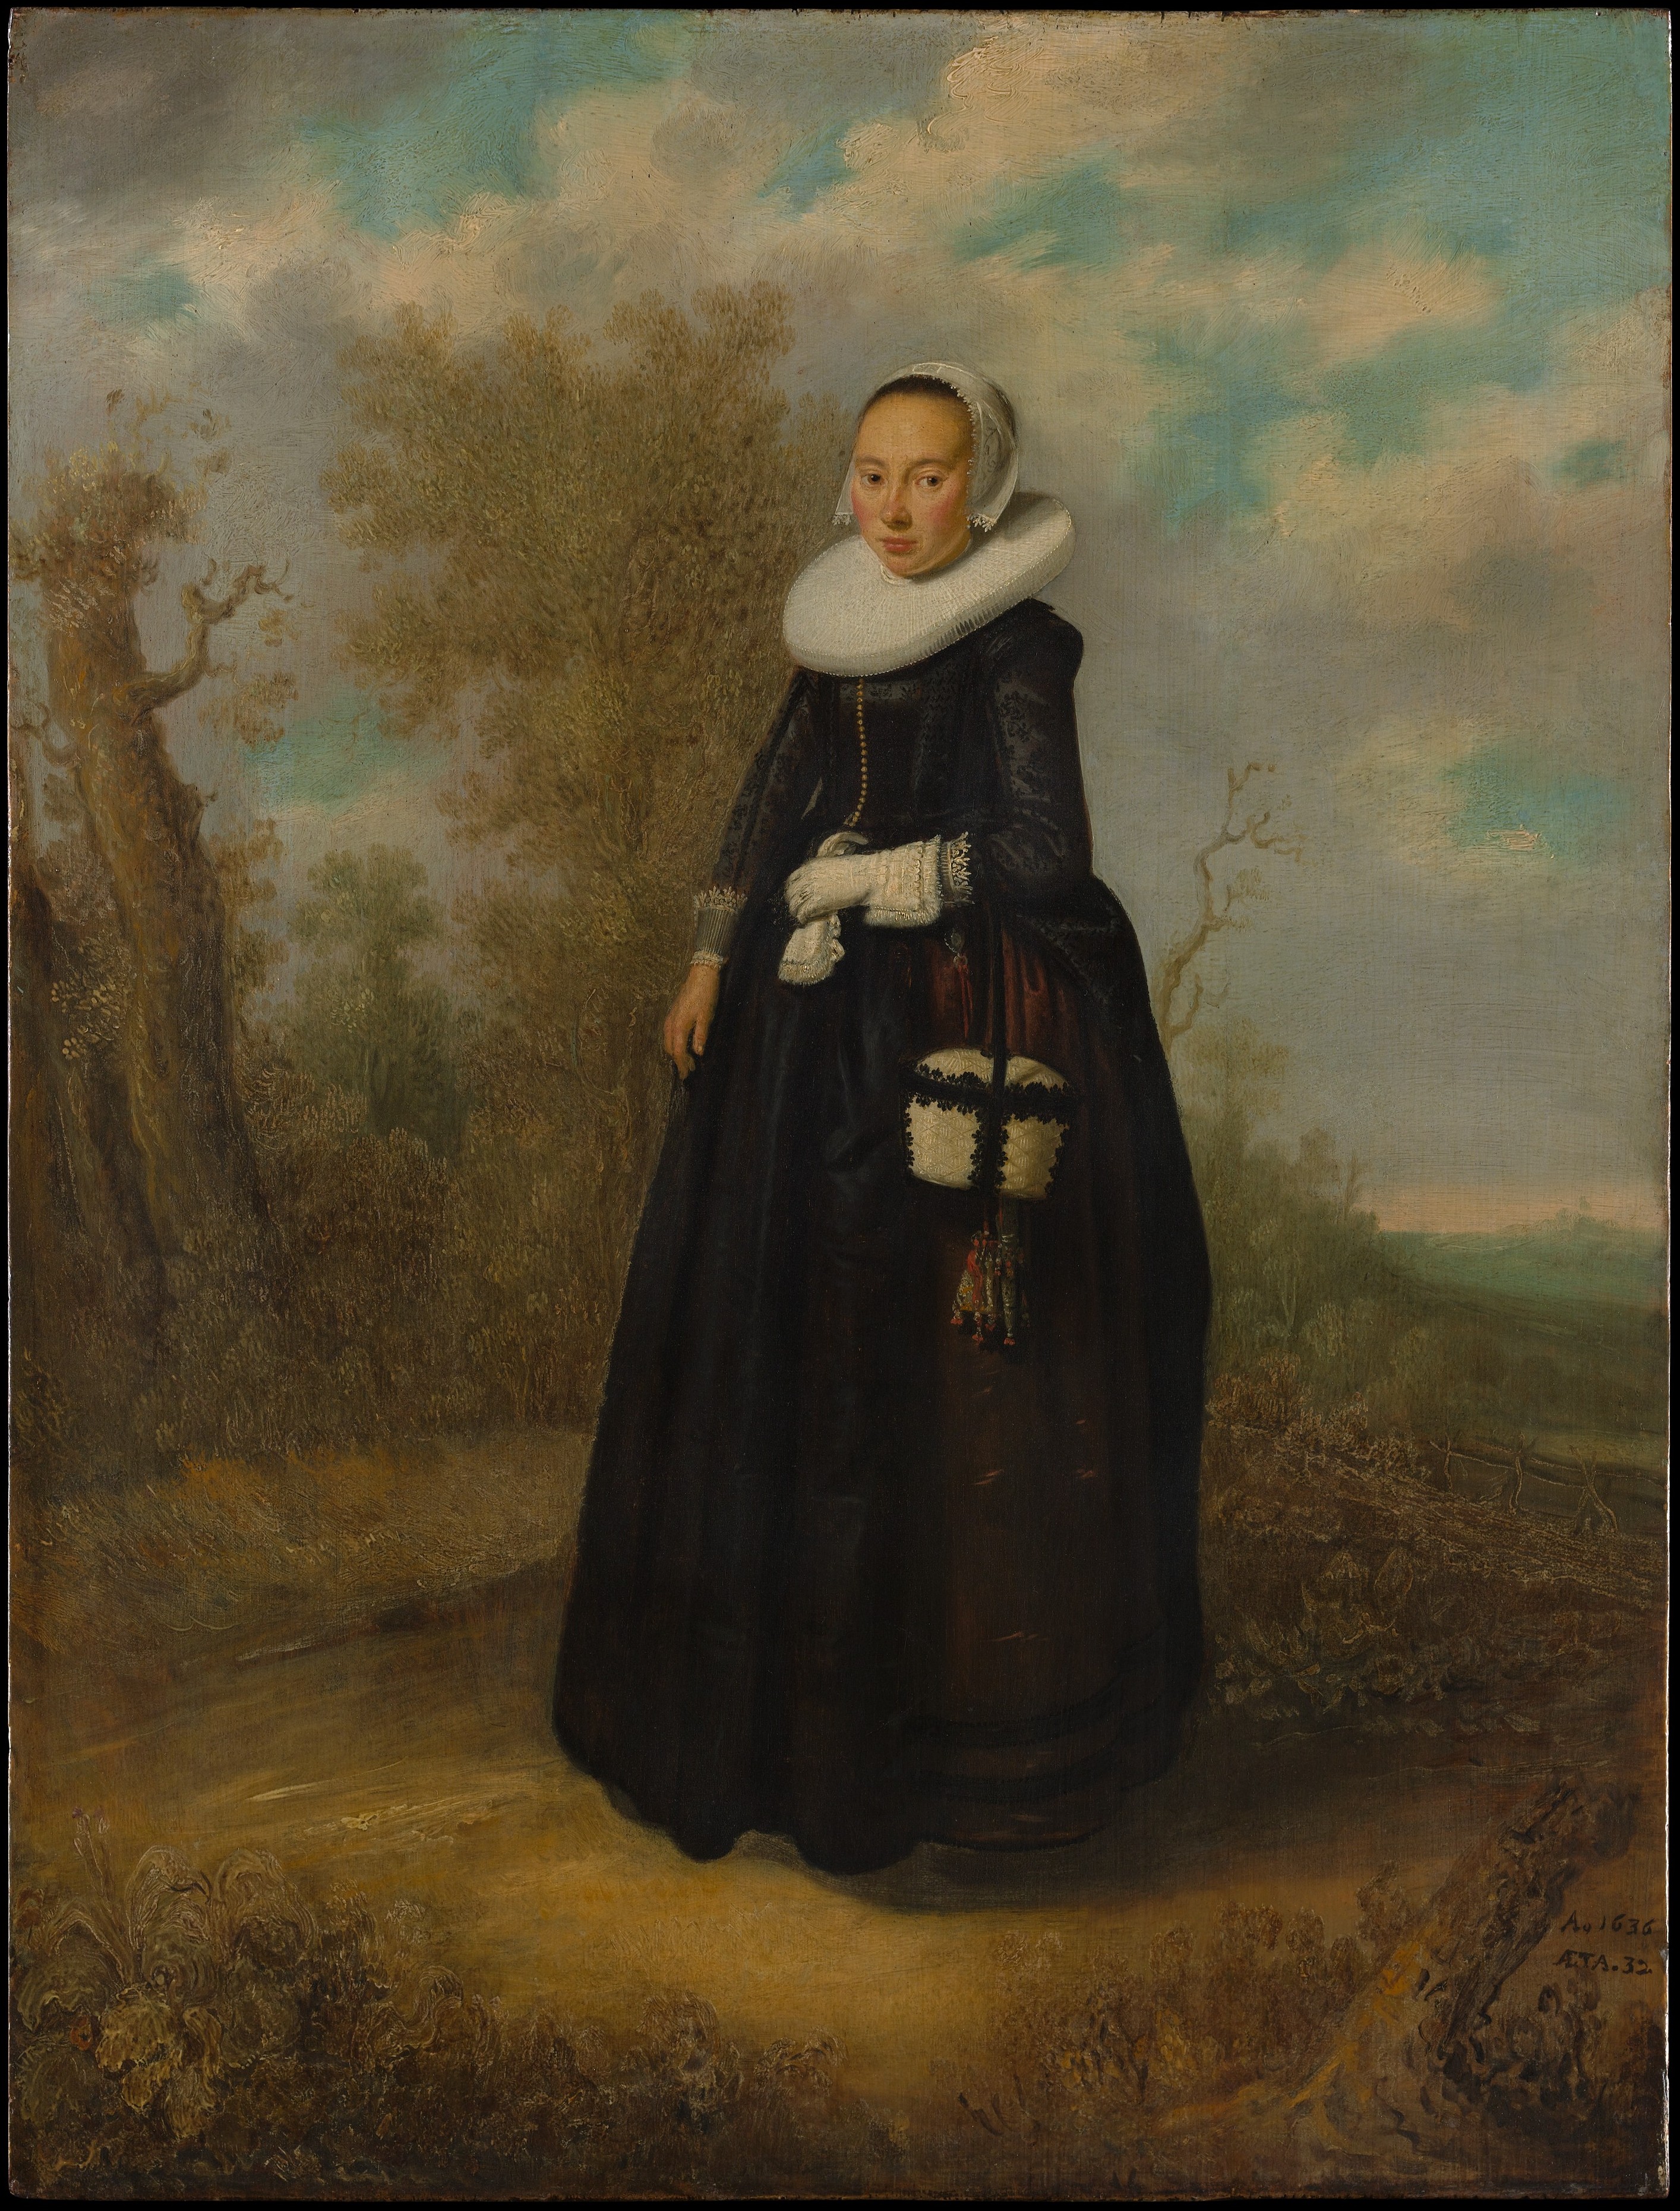 Manzara Önünde Genç Bir Kadın by Bilinmeyen Sanatçı - 1636 - 66 x 50.5 cm 